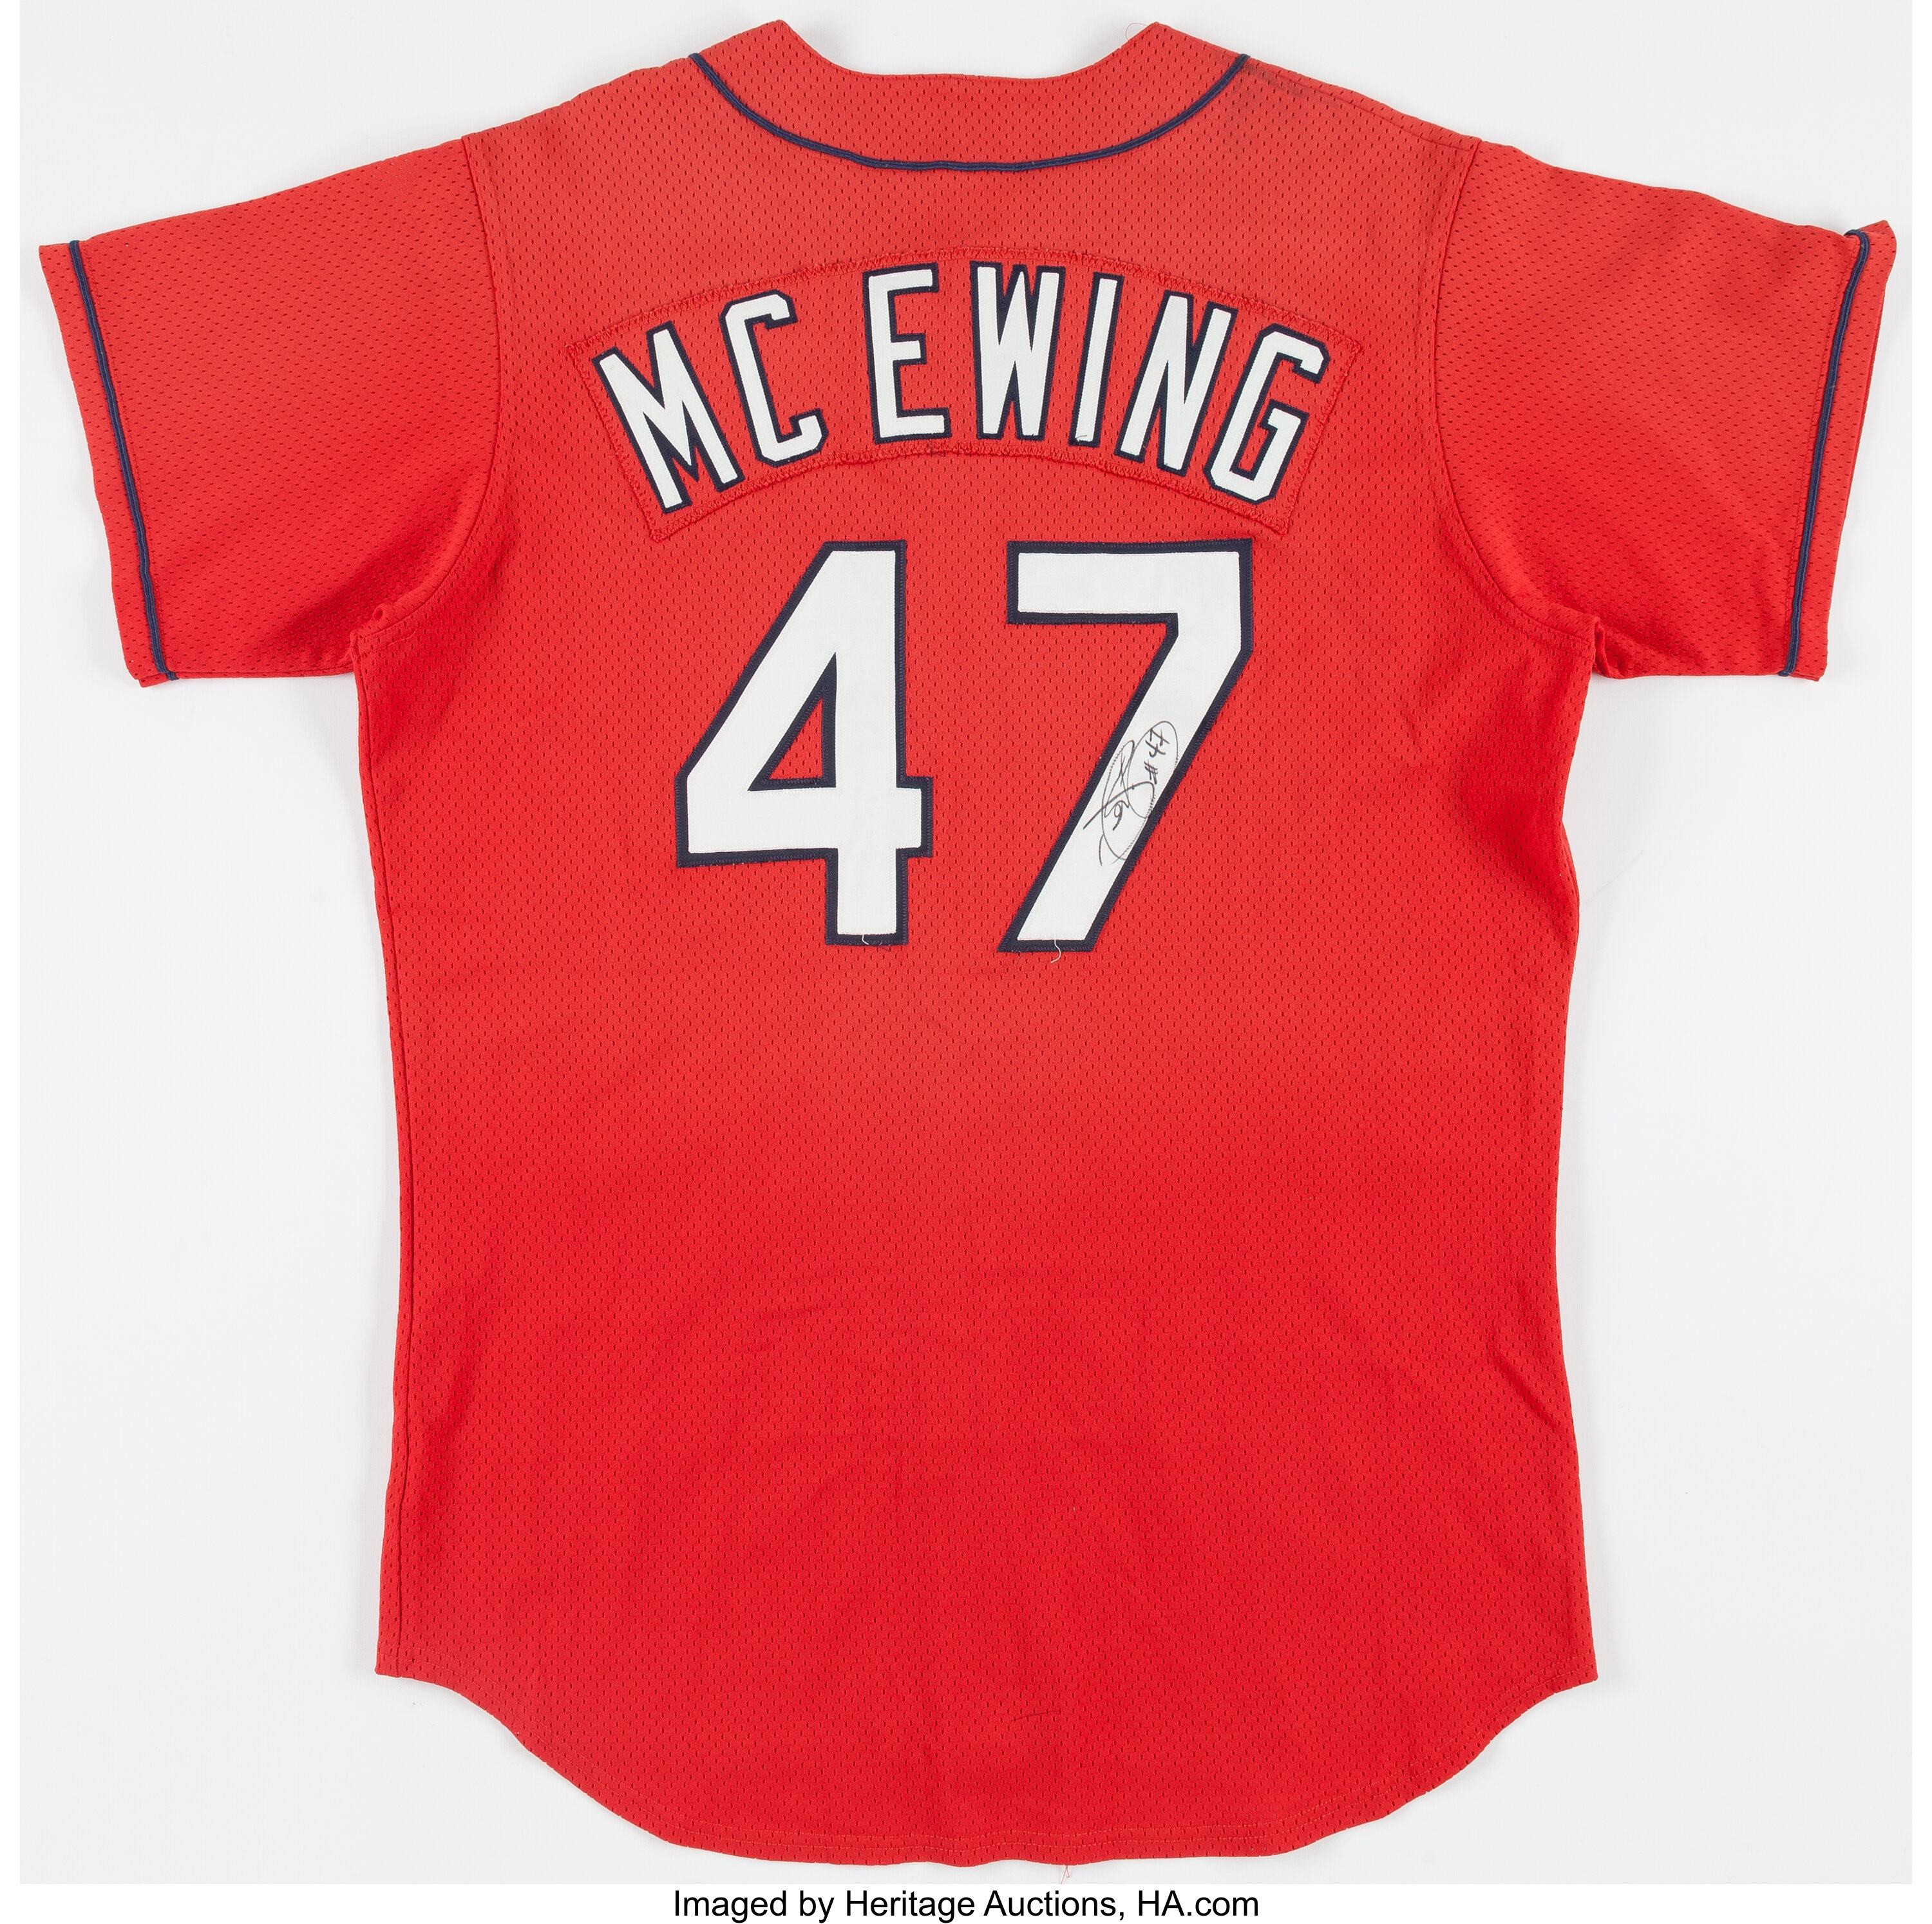 Circa 1998-99 Joe McEwing Signed St. Louis Cardinals Batting